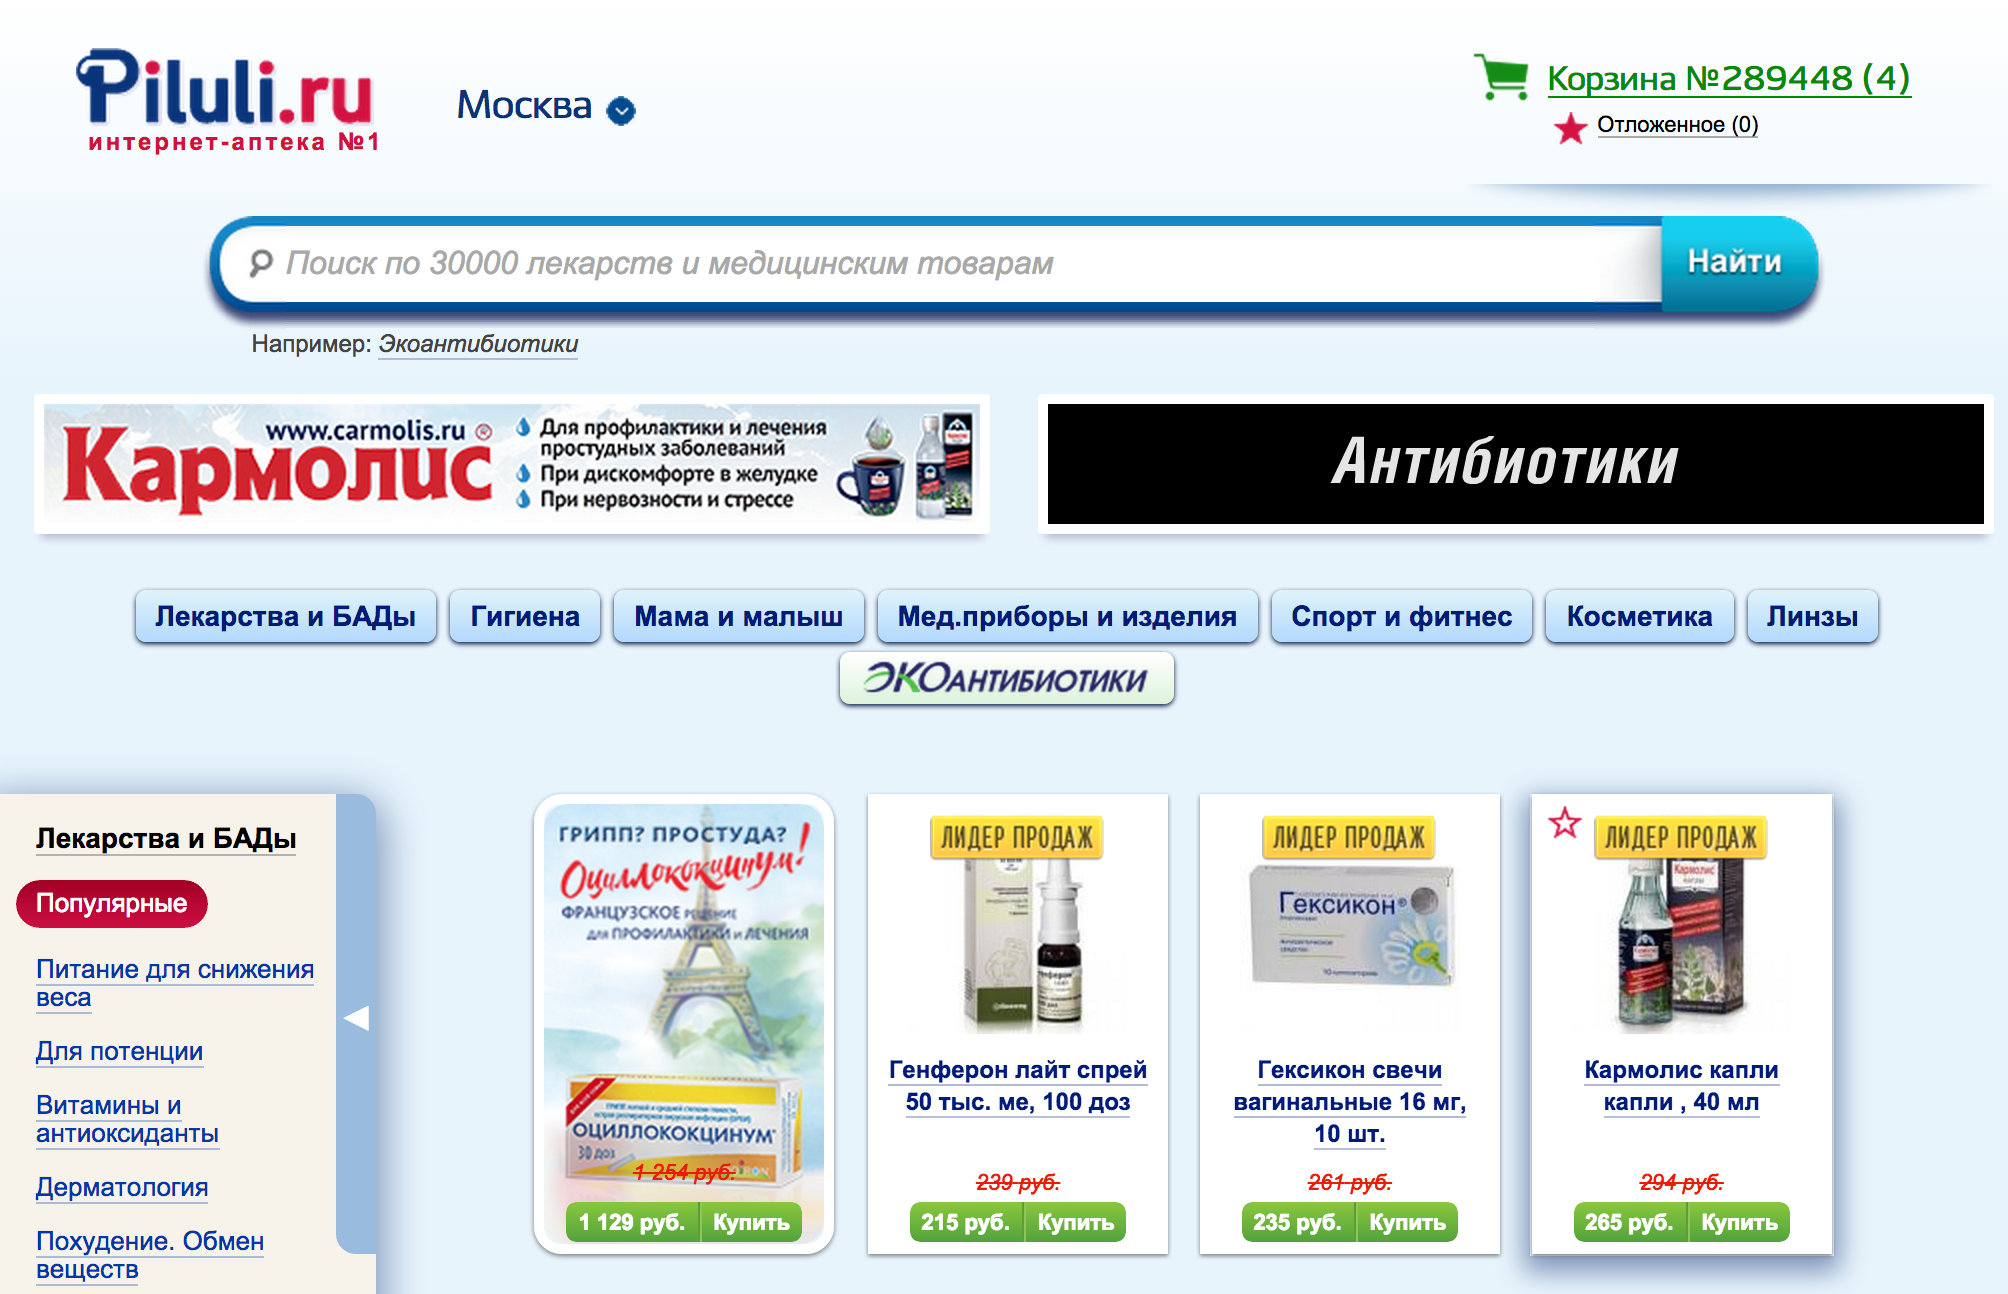 Онлайн аптека Piluli.ru